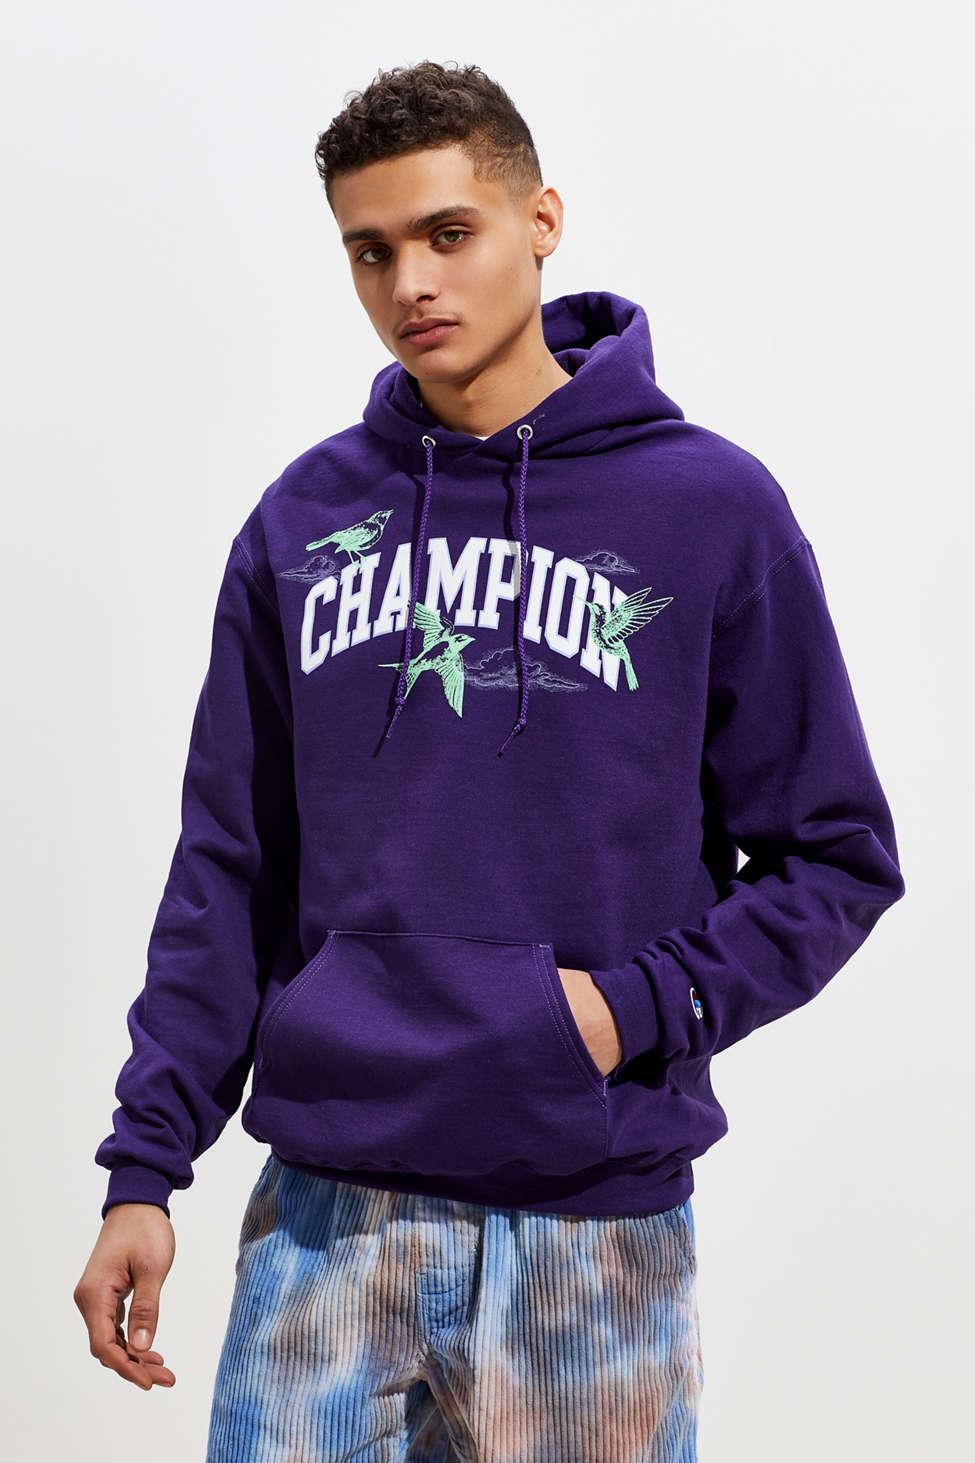 Champion Champion Uo Exclusive Eco Fleece Bird Print Pullover Hoodie  Sweatshirt in Purple for Men - Lyst